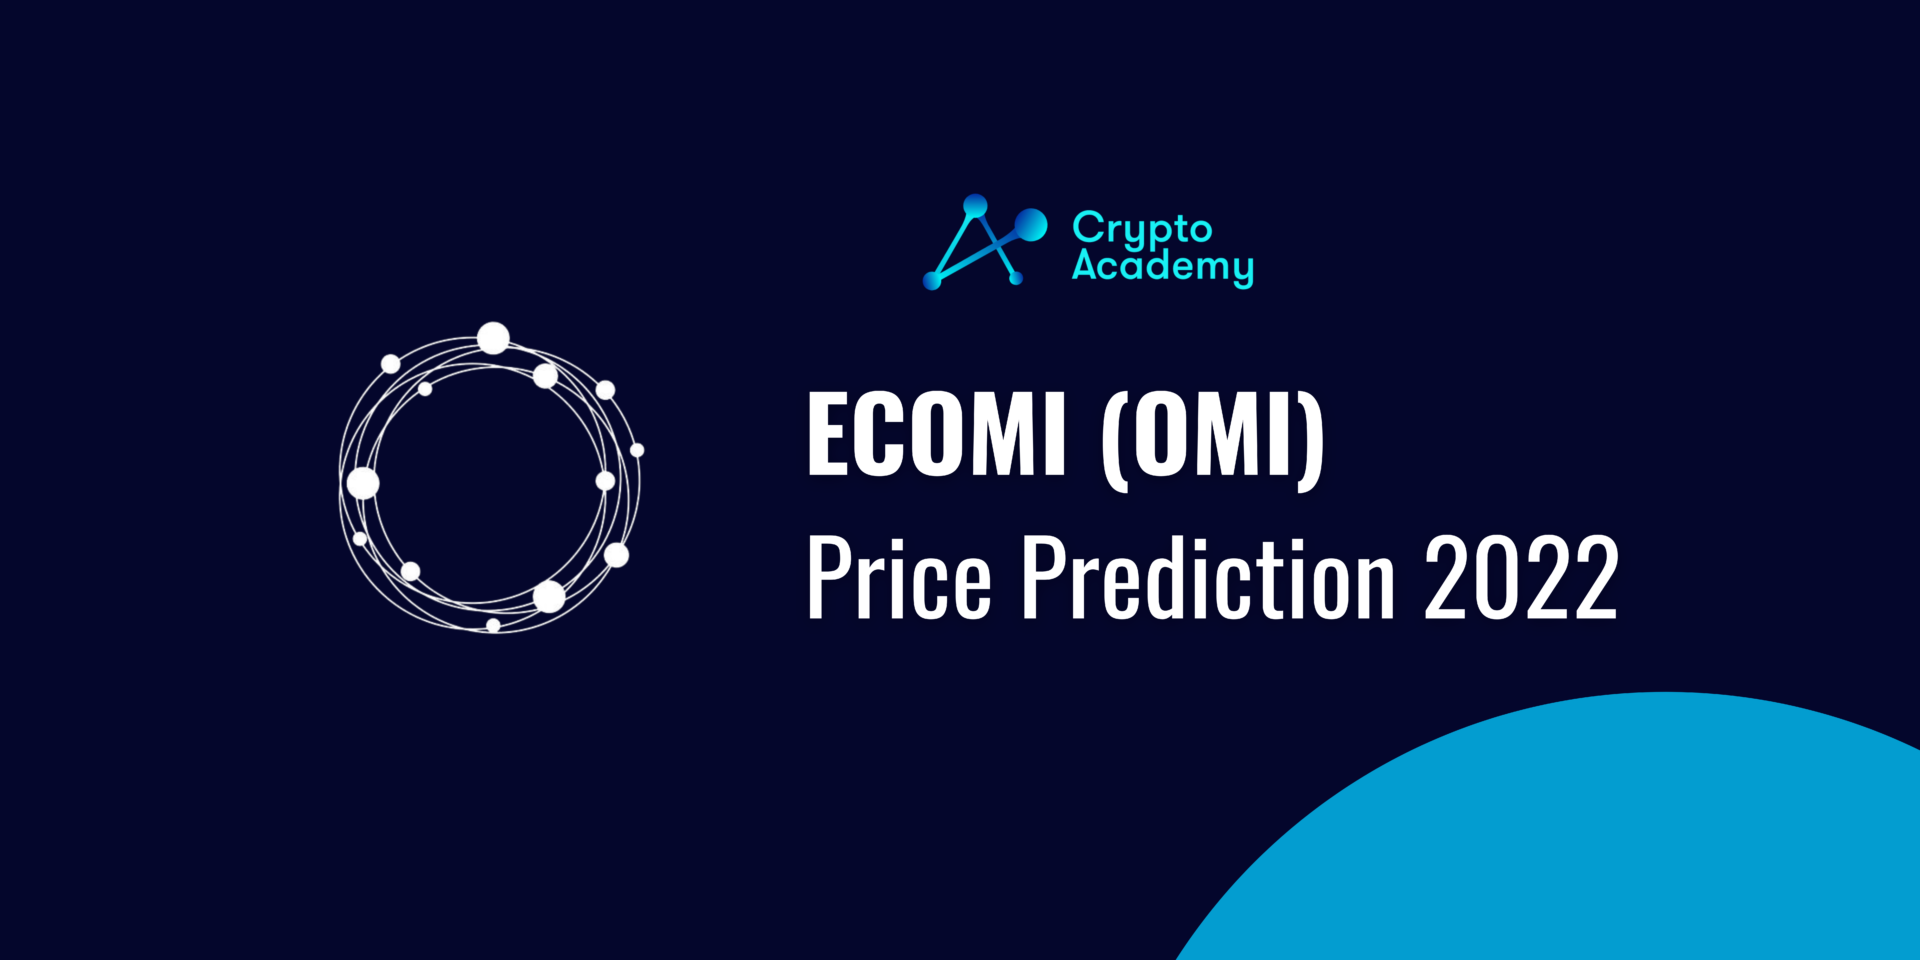 ecomi stock price